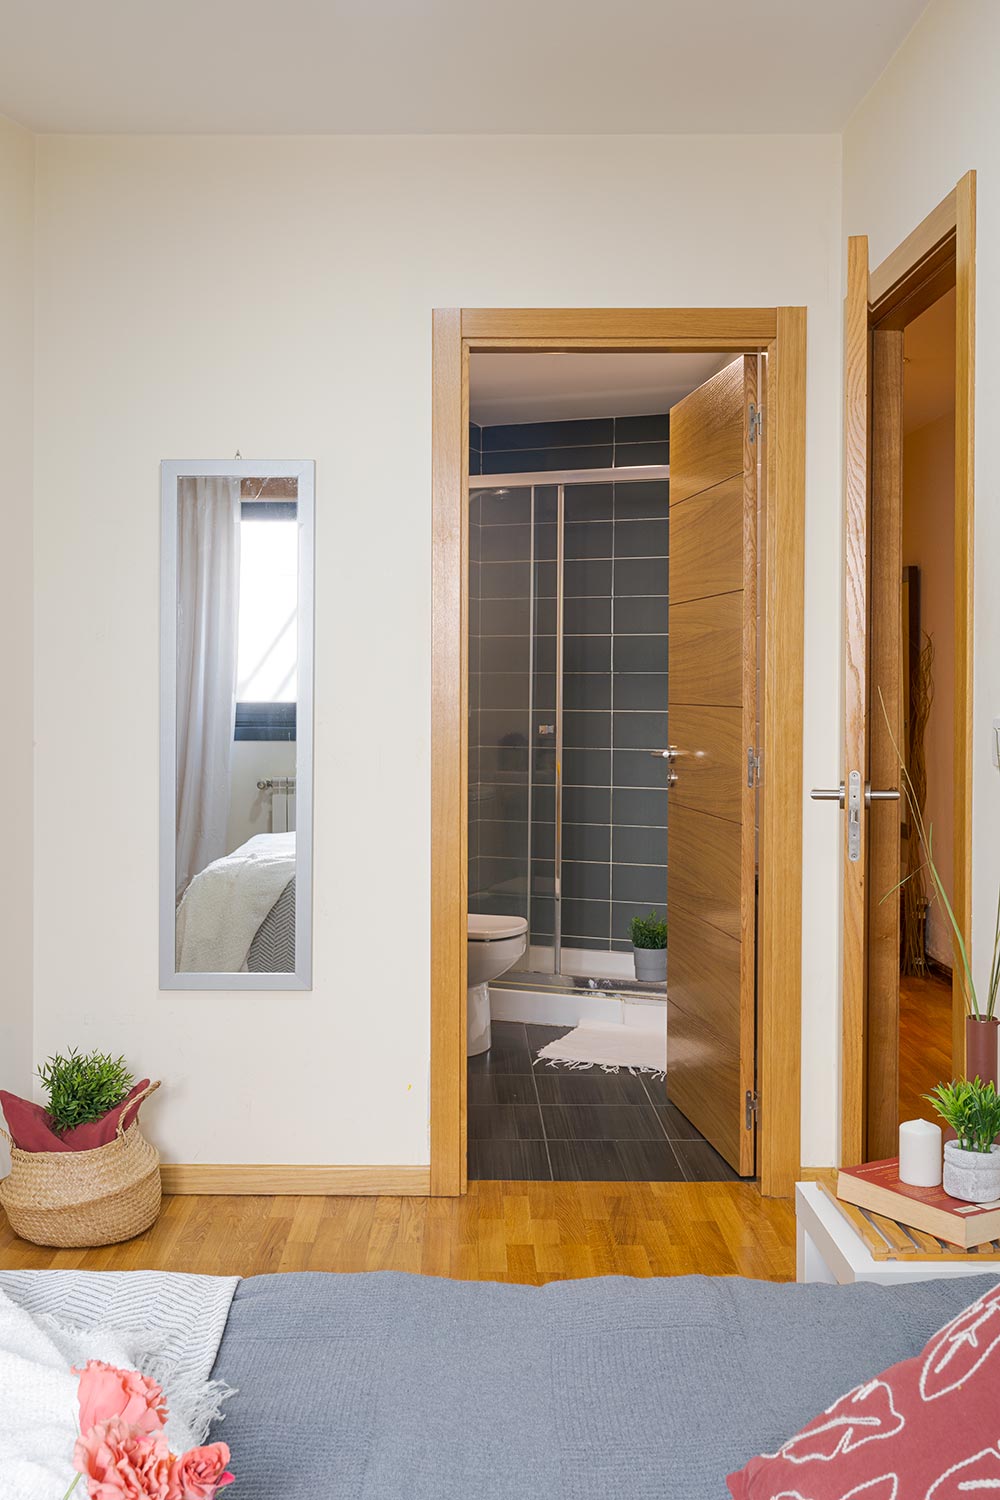 Vista desde una habitación luminosa hacia un baño moderno, destacando la continuidad del suelo de parquet marrón y las puertas de madera clara. El espacio está decorado con espejos, plantas, y una alfombra, creando un ambiente acogedor y hogareño